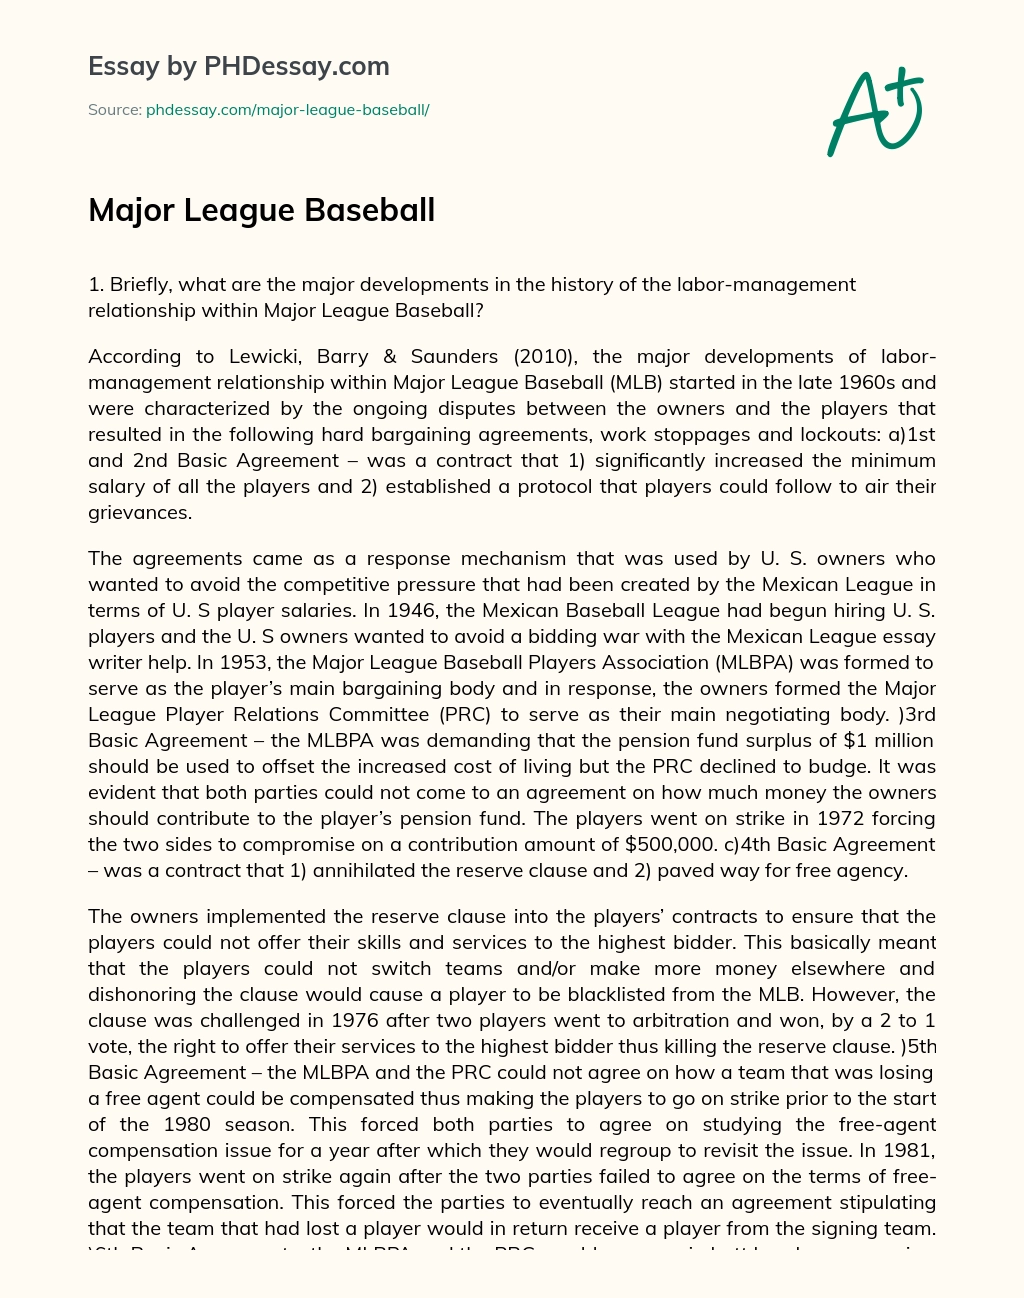 Major League Baseball essay